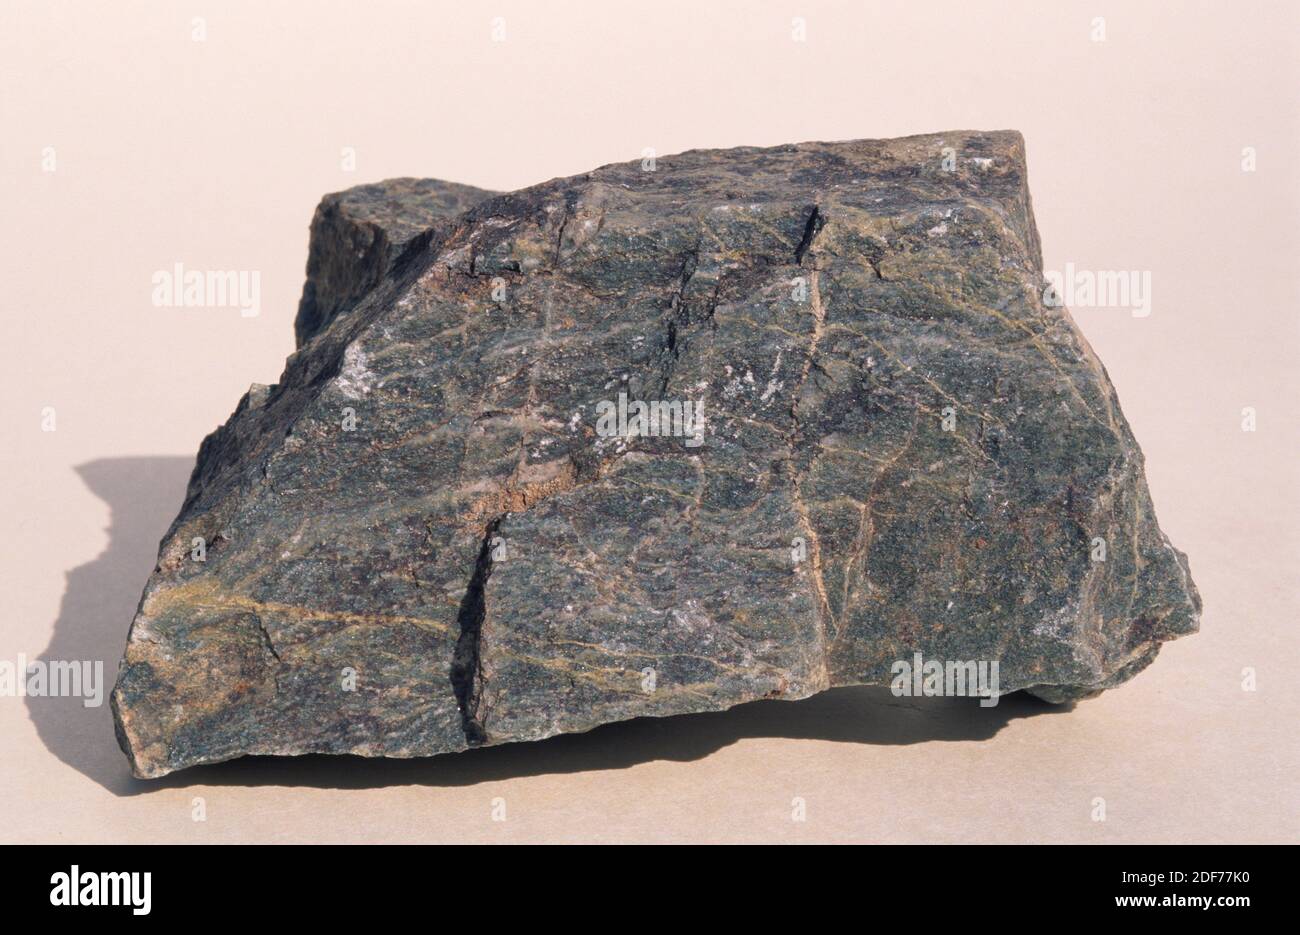 Amphibolit ist ein metamorphisches Gestein, das hauptsächlich aus Amphibolmineralen besteht. Probe. Stockfoto